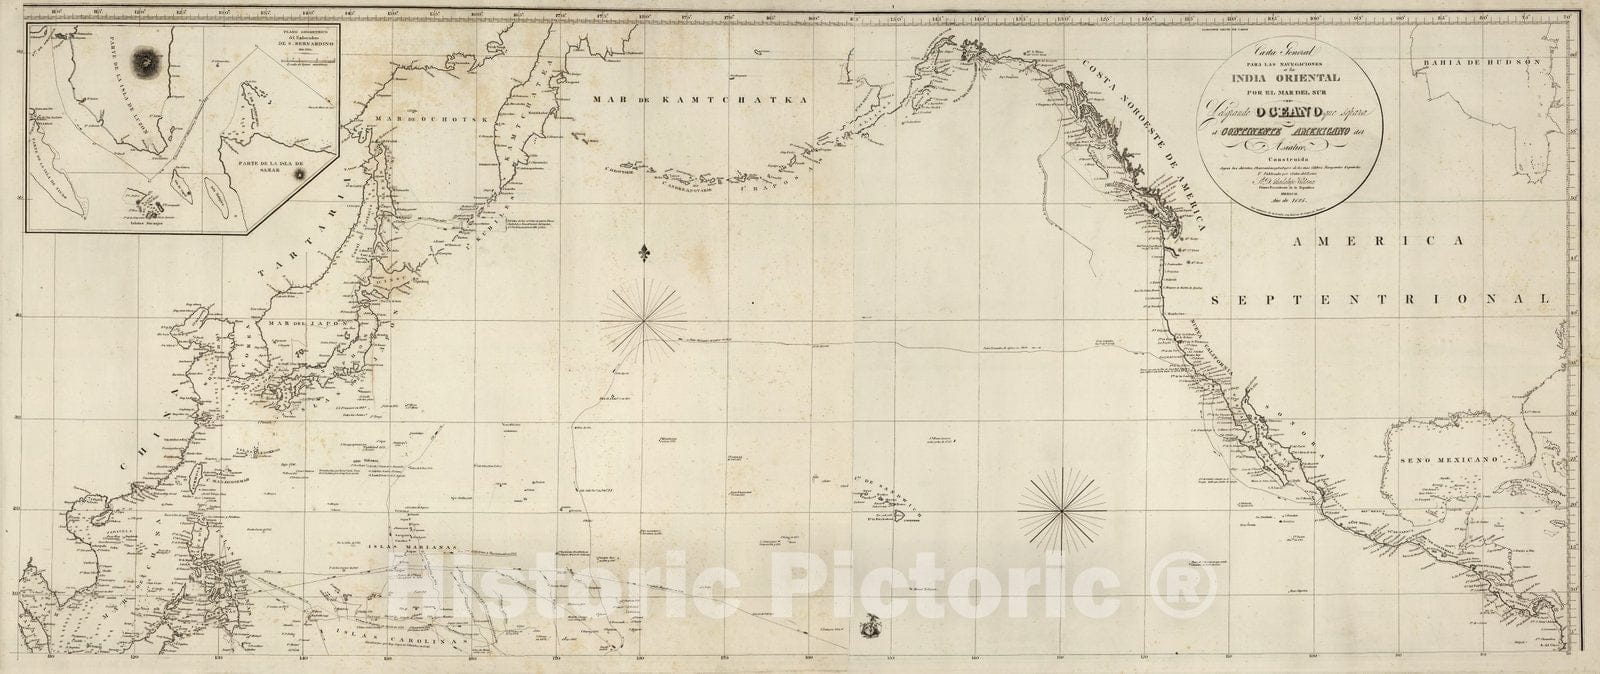 Historic Map : Carta General Para Las Navegaciones Separa el Continente Americano del Asiatico, 1825, Vintage Wall Decor